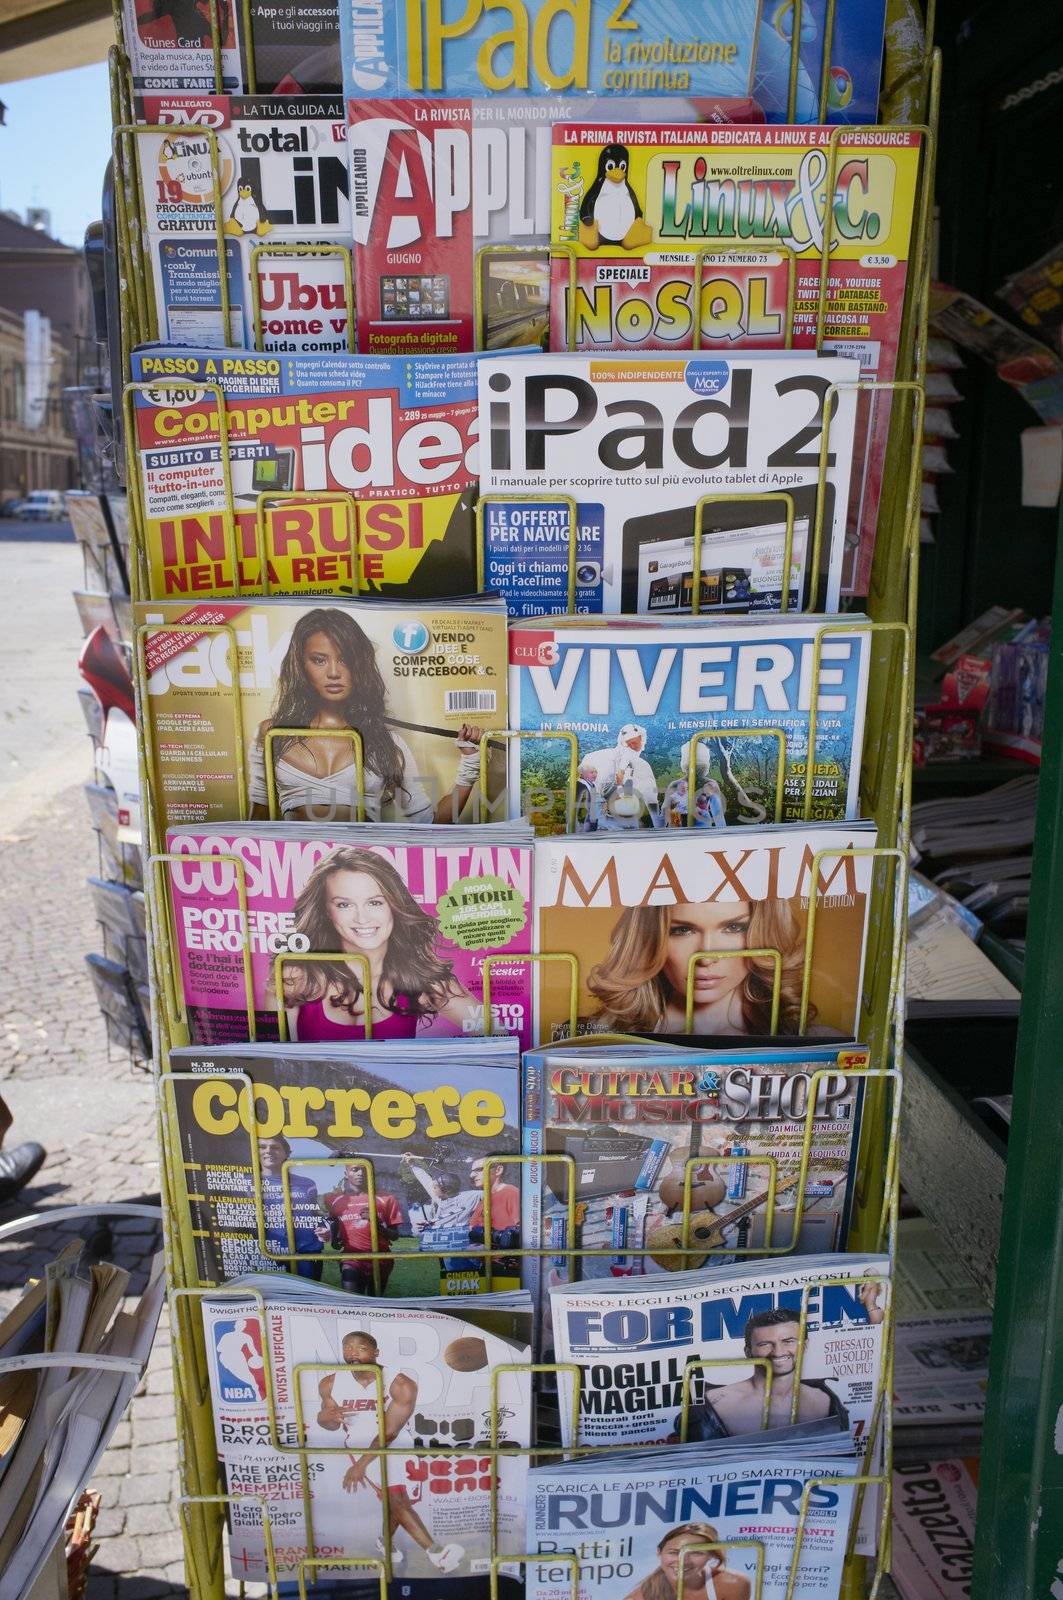 Milan, Lombardy, Italy - May 28: Various Italian magazines for sale. May 28, 2011 in Milan, Lombardy, Italy